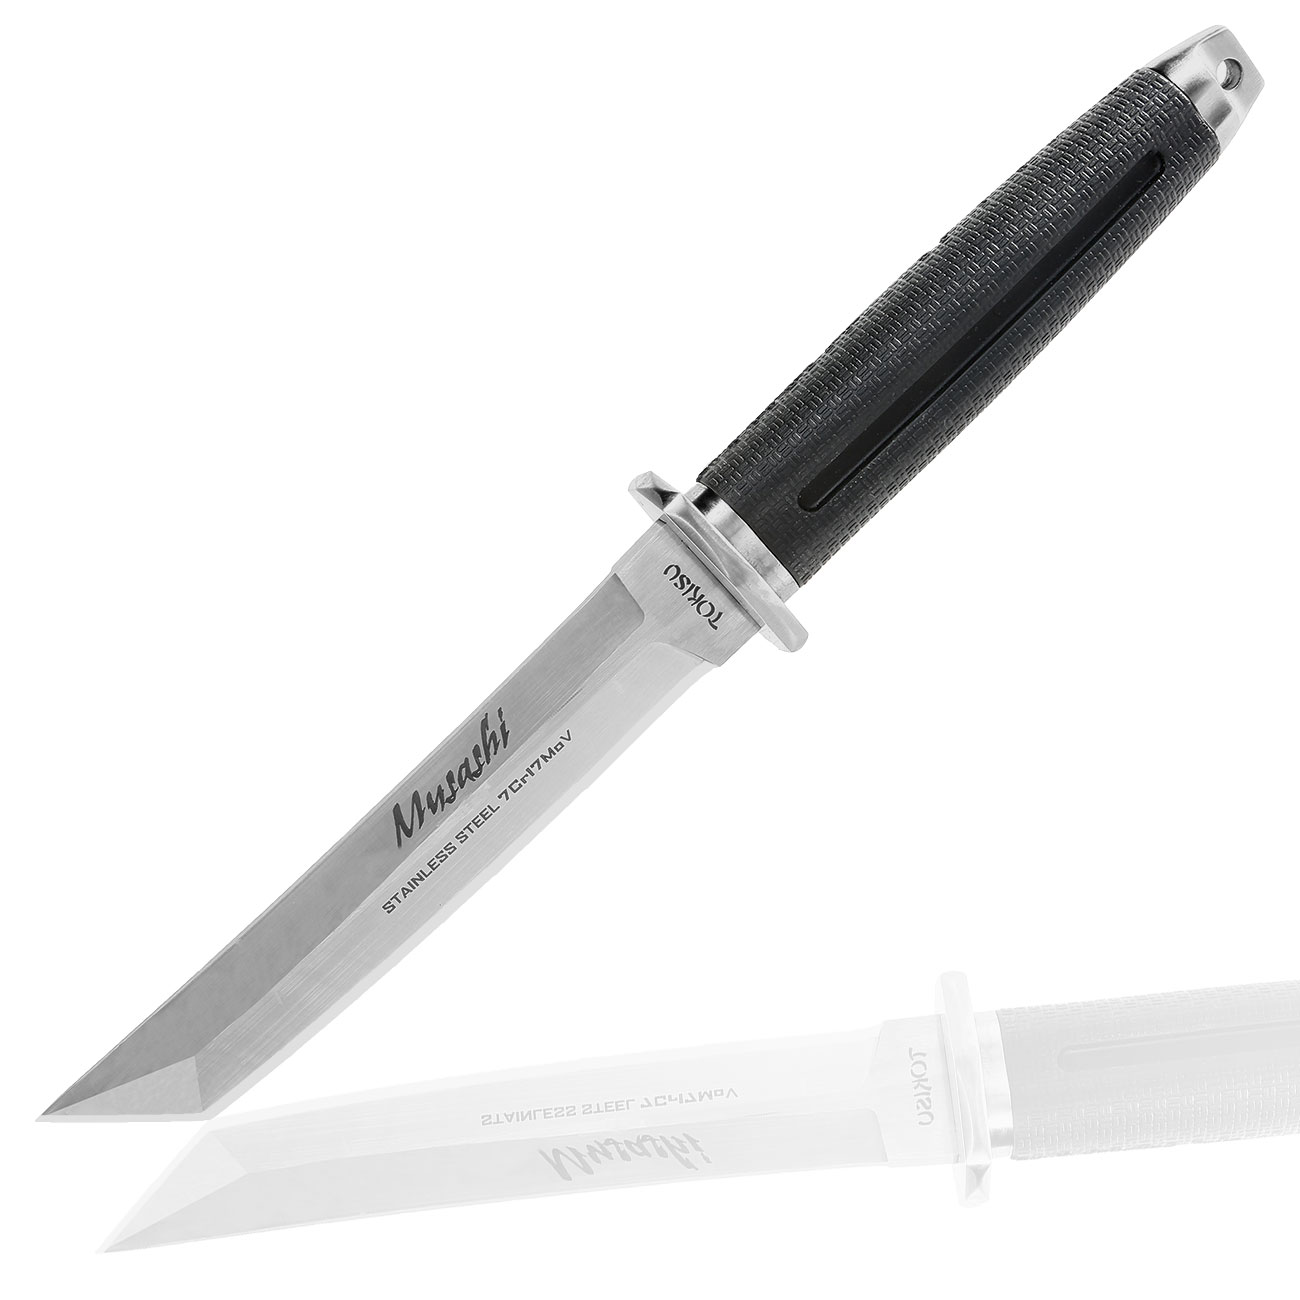 Tokisu Taktisches Messer Musashii Tantoklinge silber/schwarz inkl. Gürtelscheide und Box